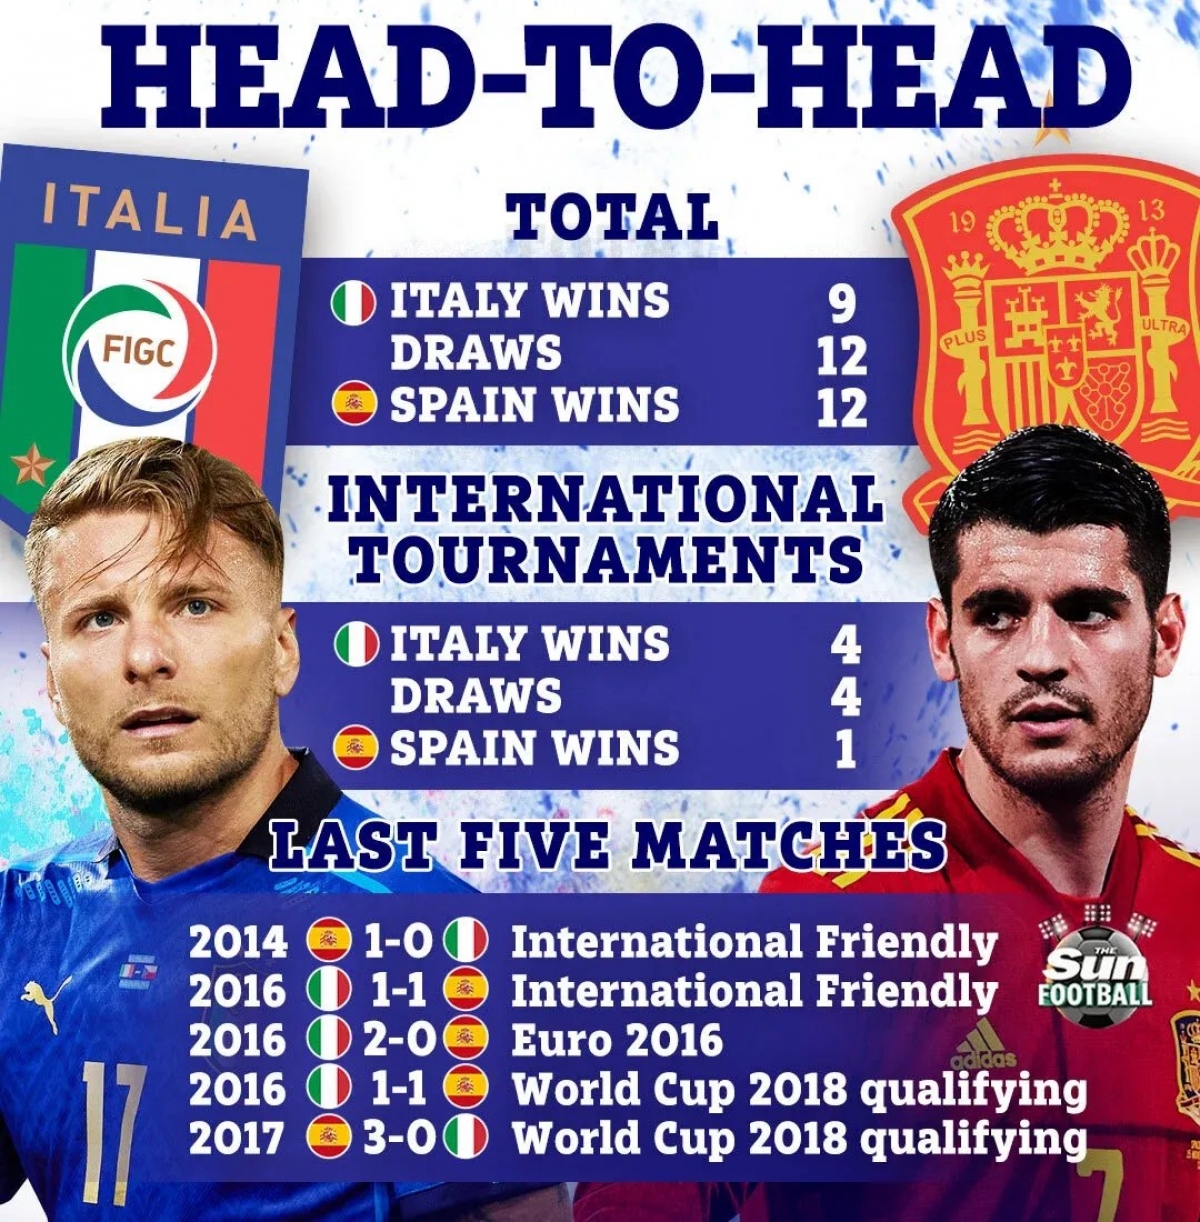 Lịch sử các cuộc chạm trán giữa 2 đội và phong độ gần đây đang nghiêng về chủ nhà Italia